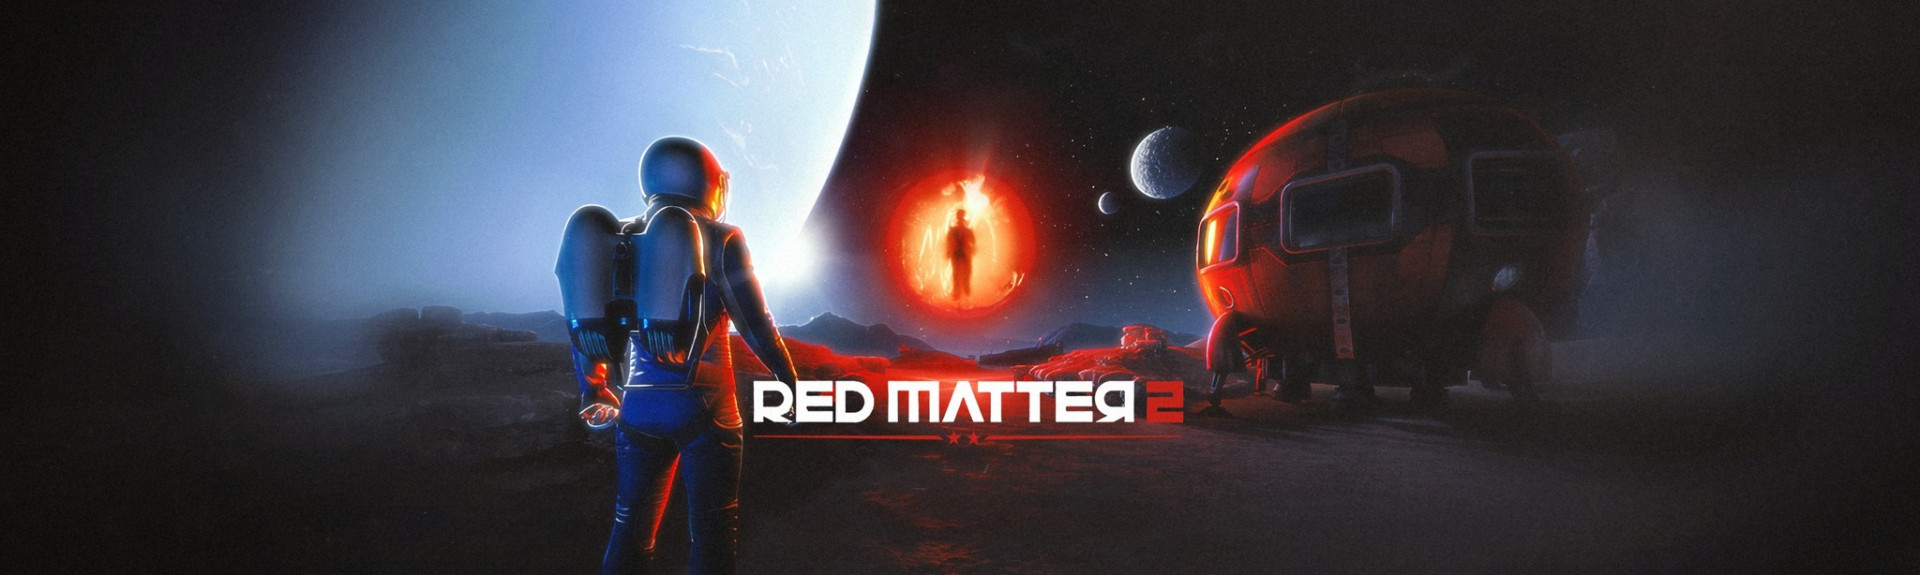 Red Matter 2: ANÁLISIS